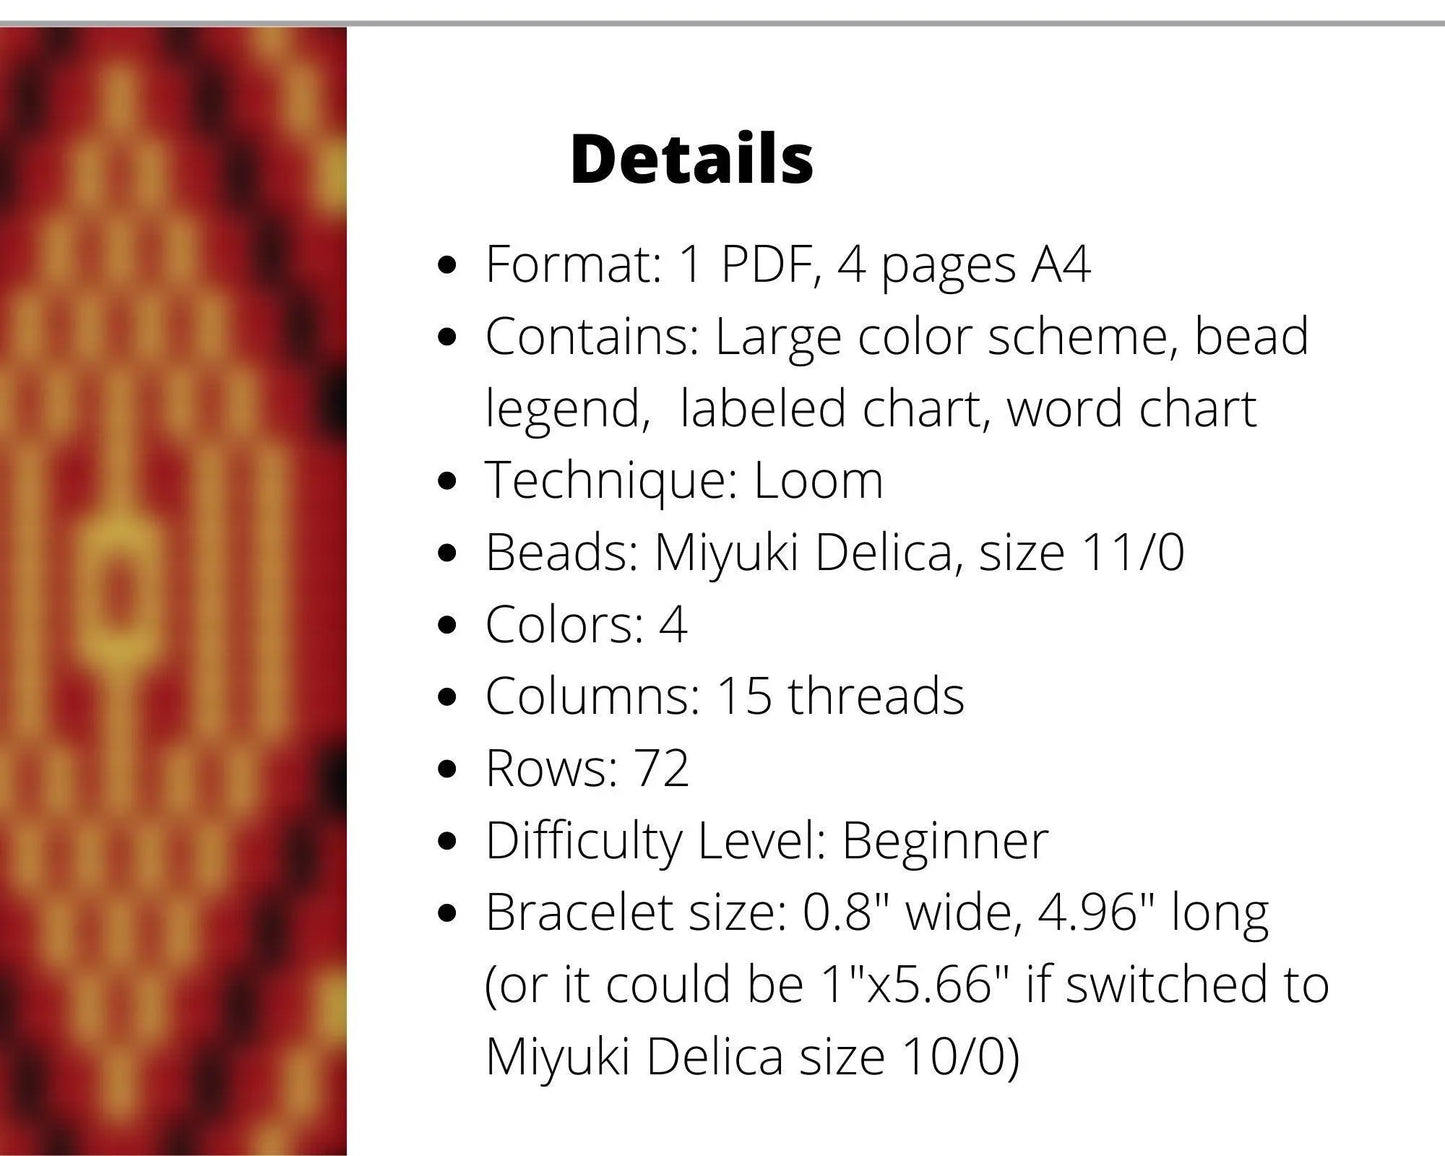 Red Ethnic Loom pattern for beaded bracelet - NikoBeadsUA